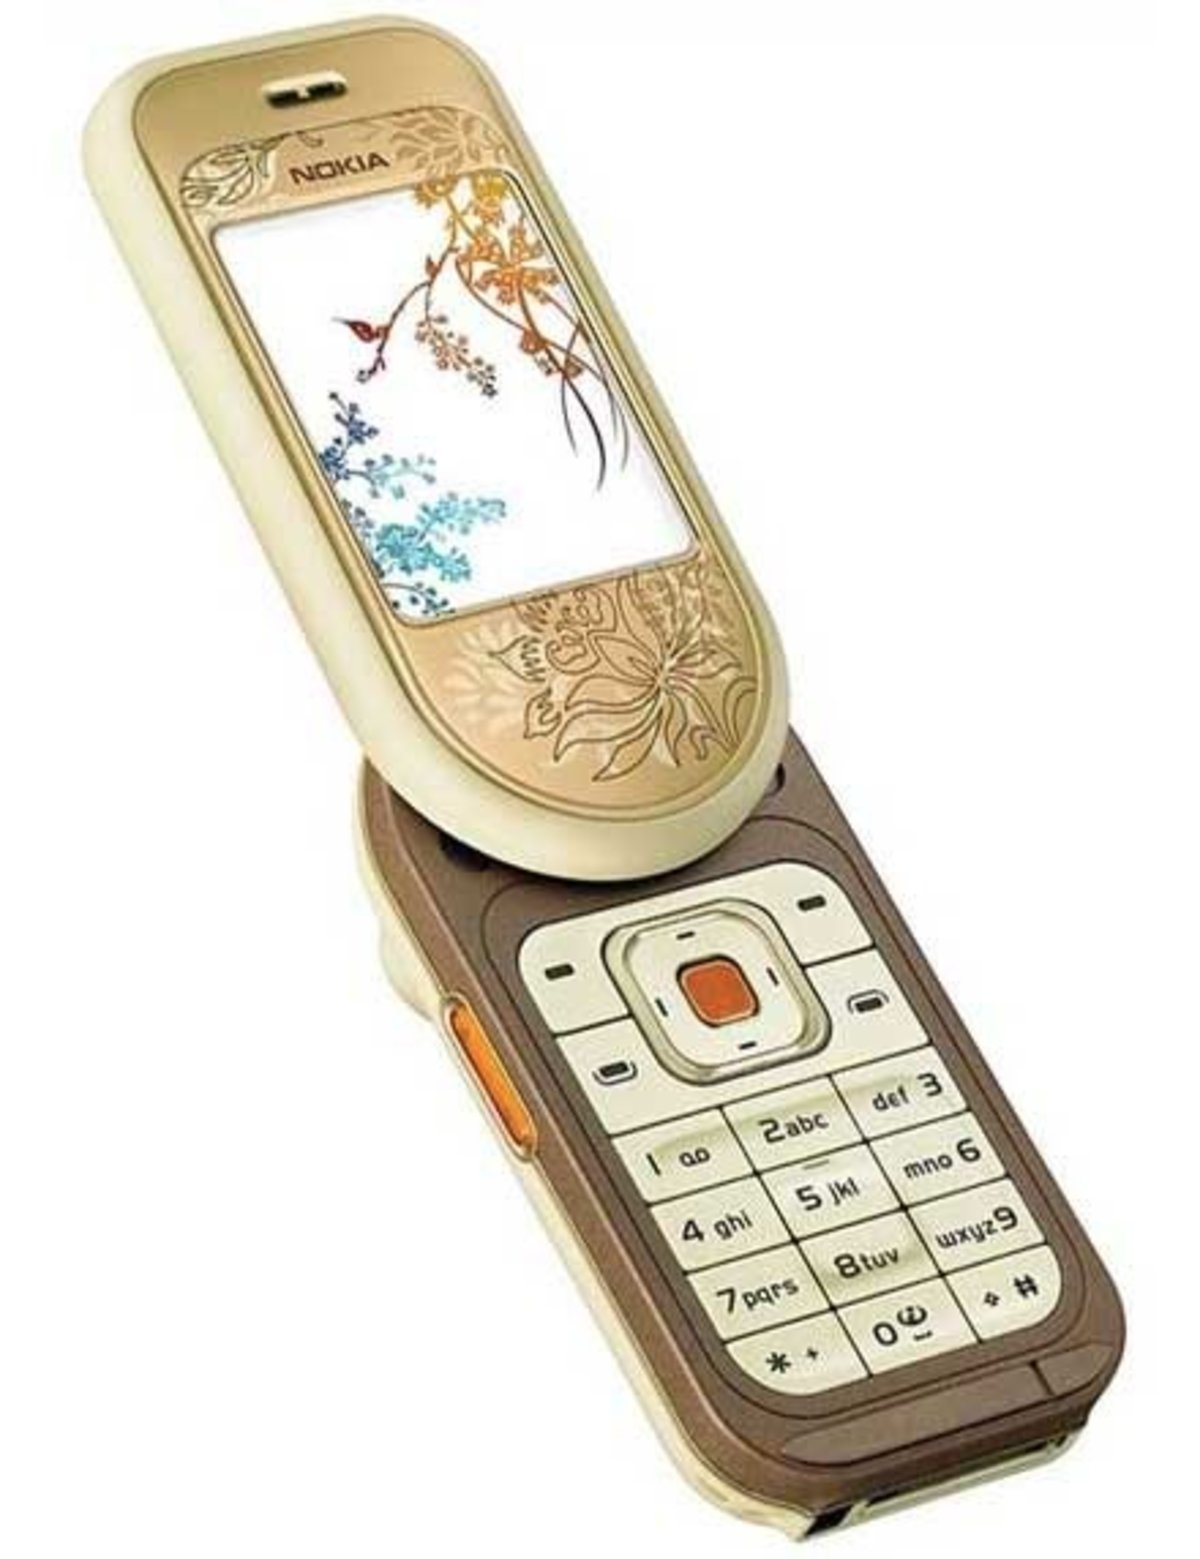 Nokia 7370